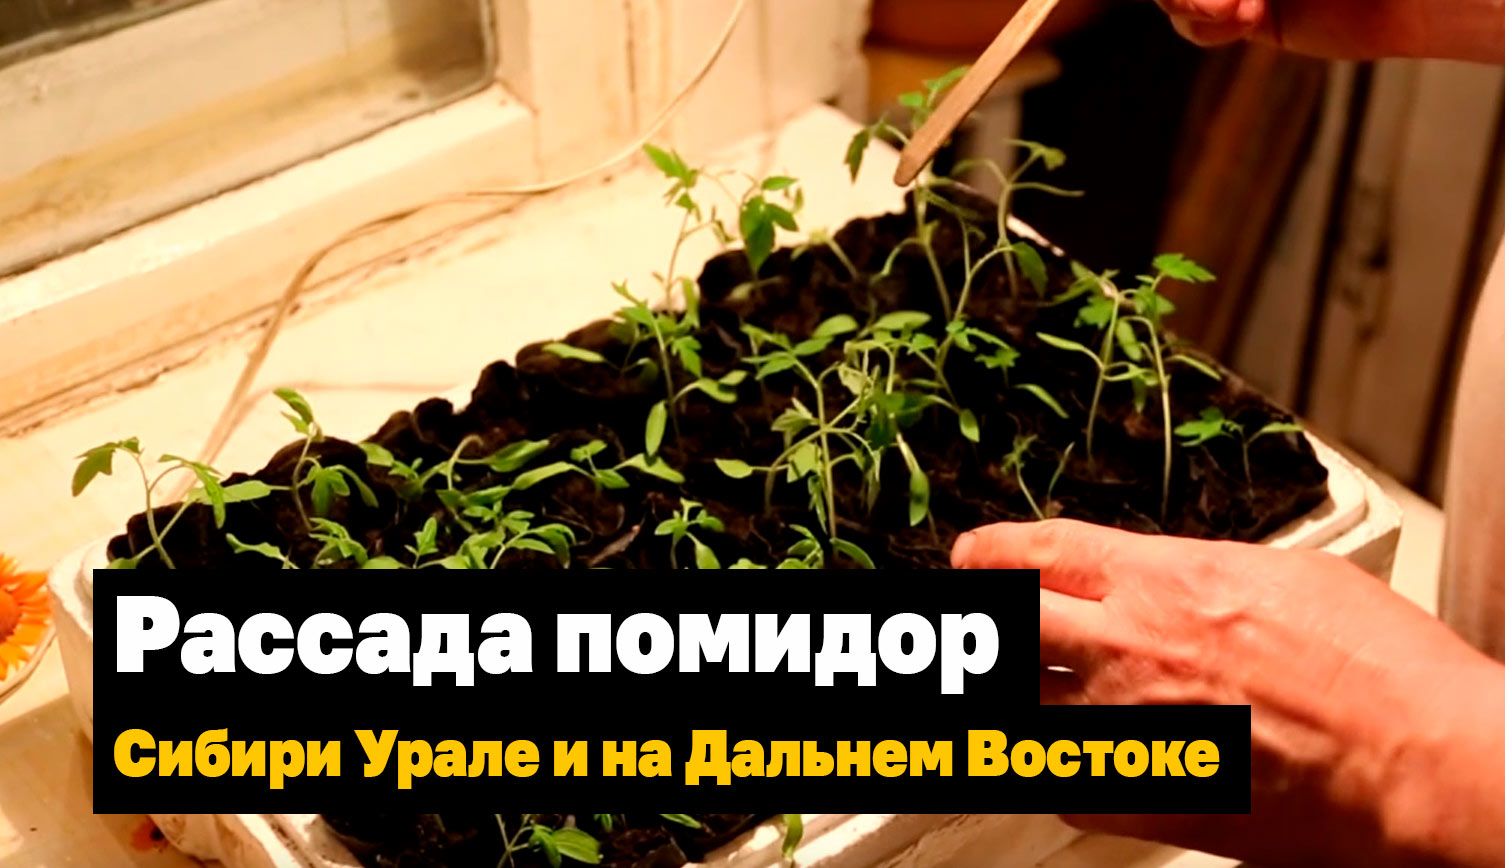 Вырастить рассаду помидор в Сибири, Урале и на Дальнем Востоке